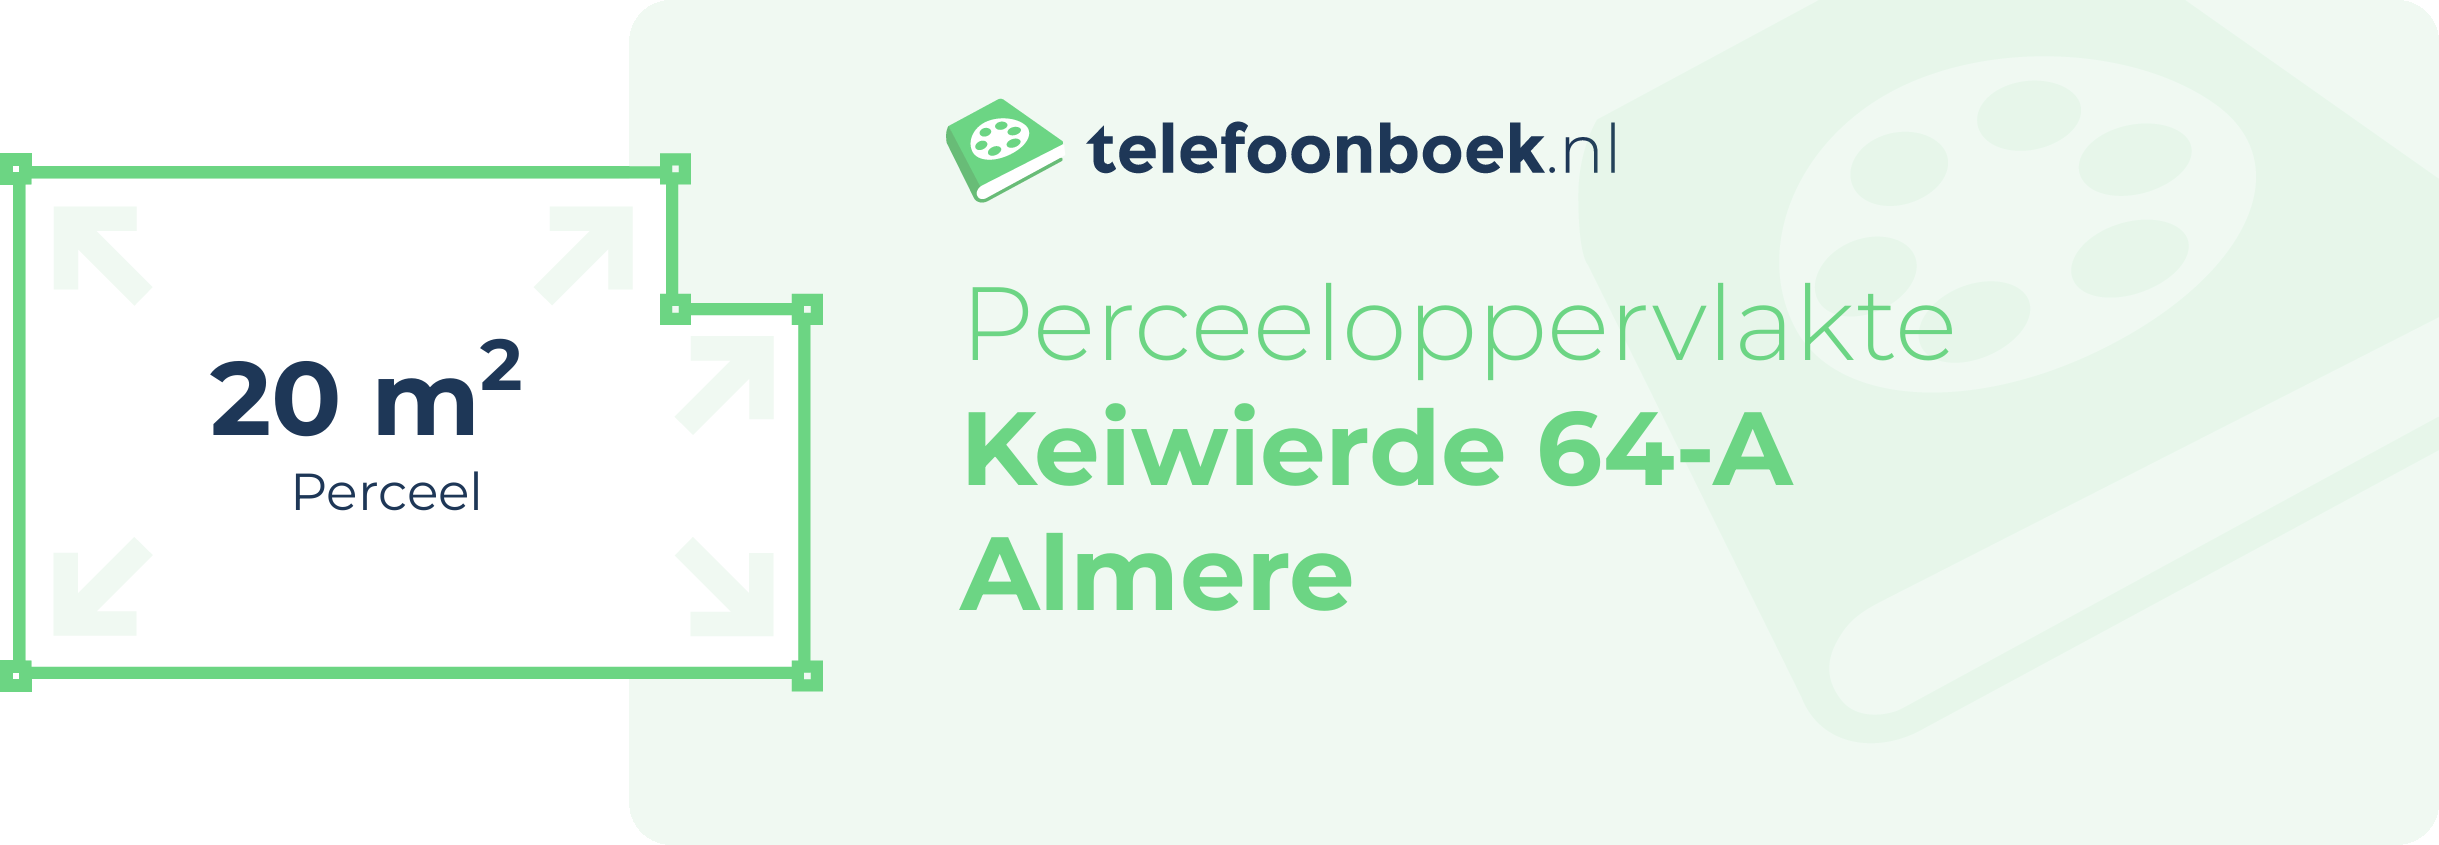 Perceeloppervlakte Keiwierde 64-A Almere